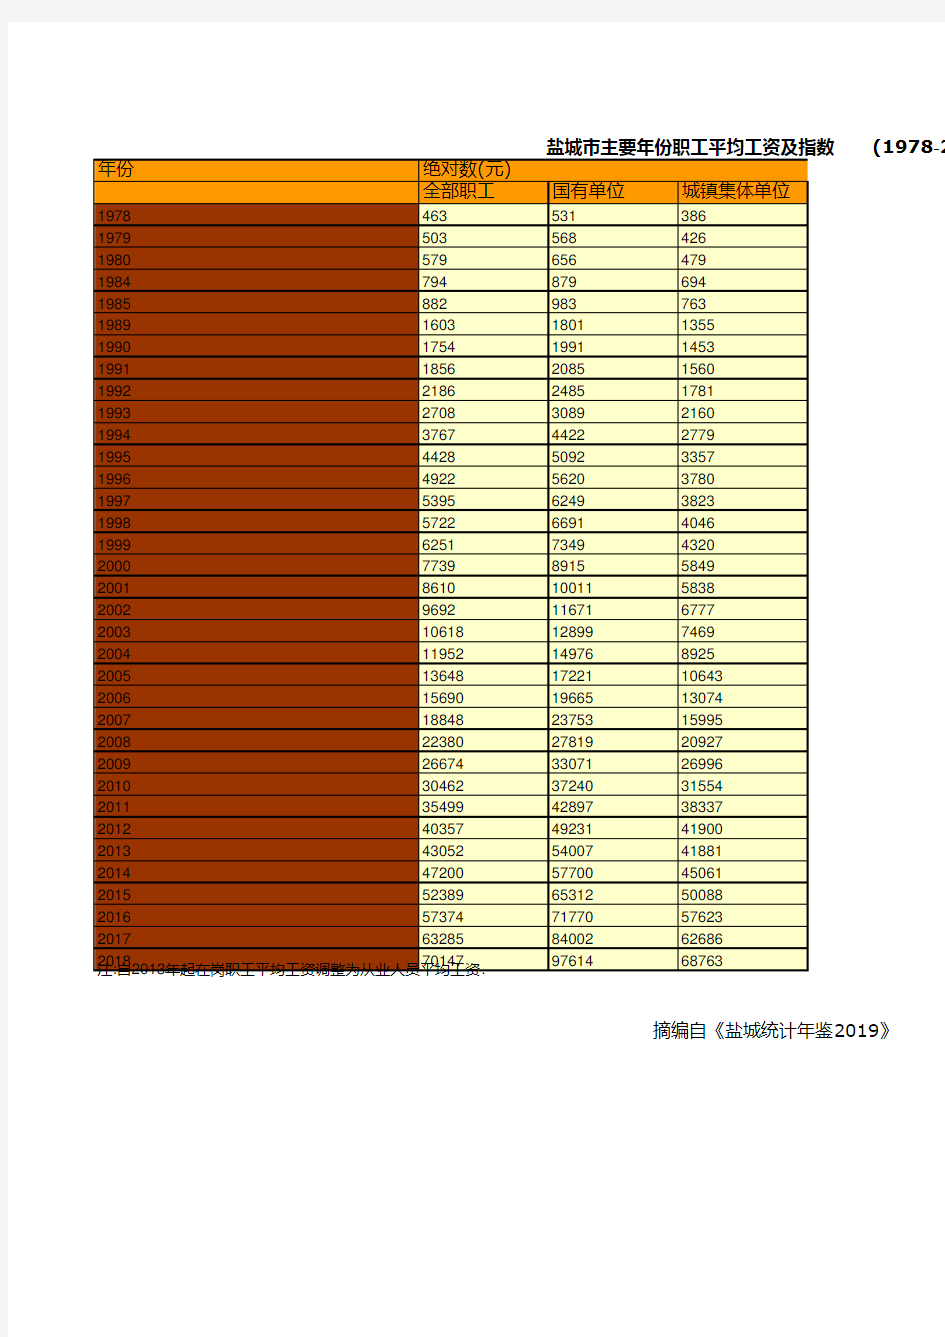 江苏省盐城市统计年鉴社会经济发展指标数据：职工平均工资及指数统计(1978-2018)